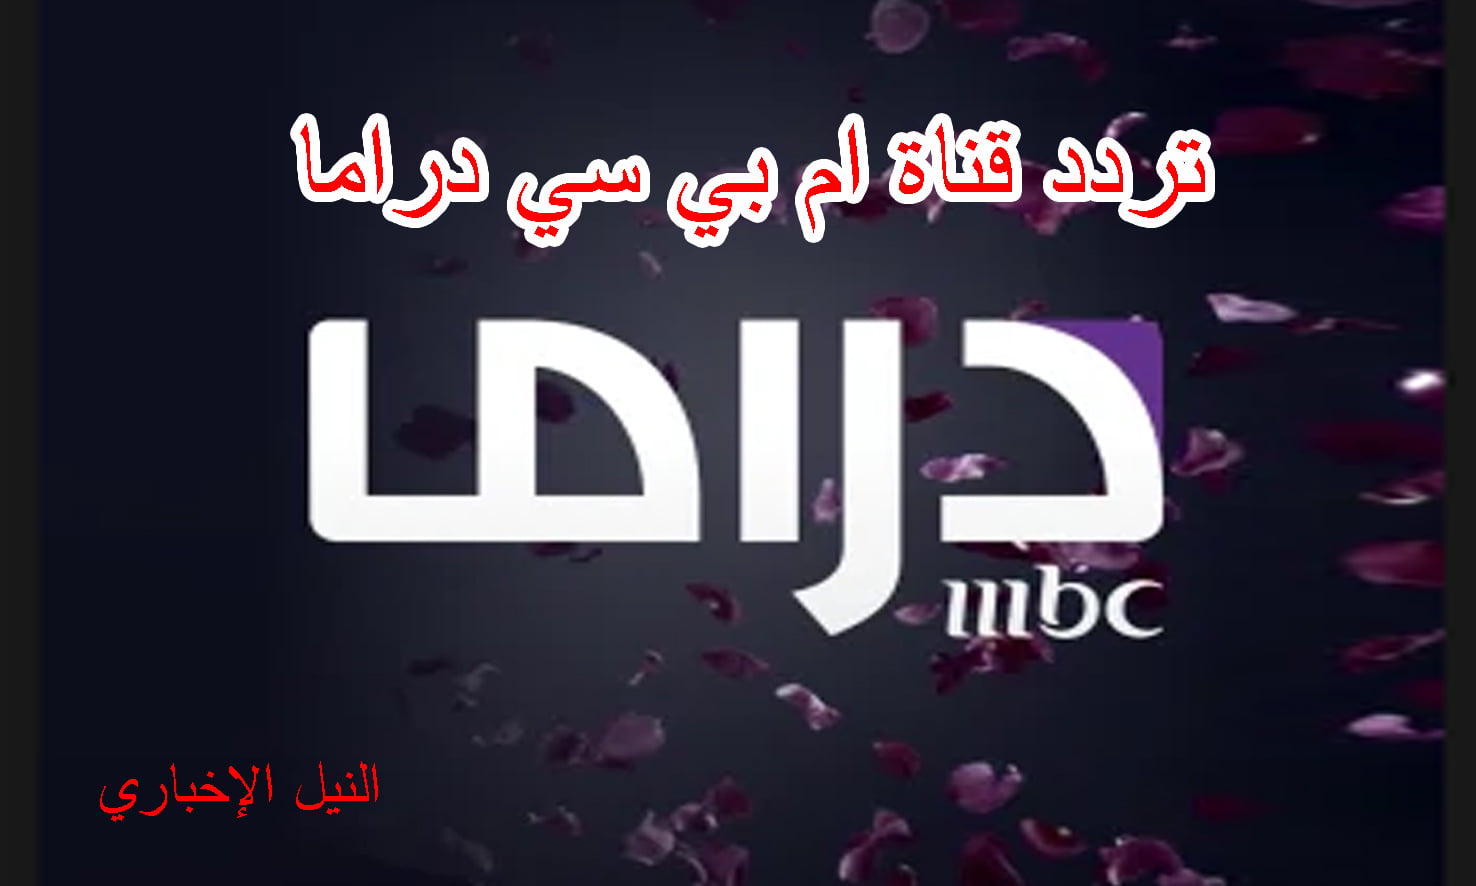 تردد قناة إم بي سي دراما mbc drama الجديد تابع احدث المسلسلات المصرية والعربية